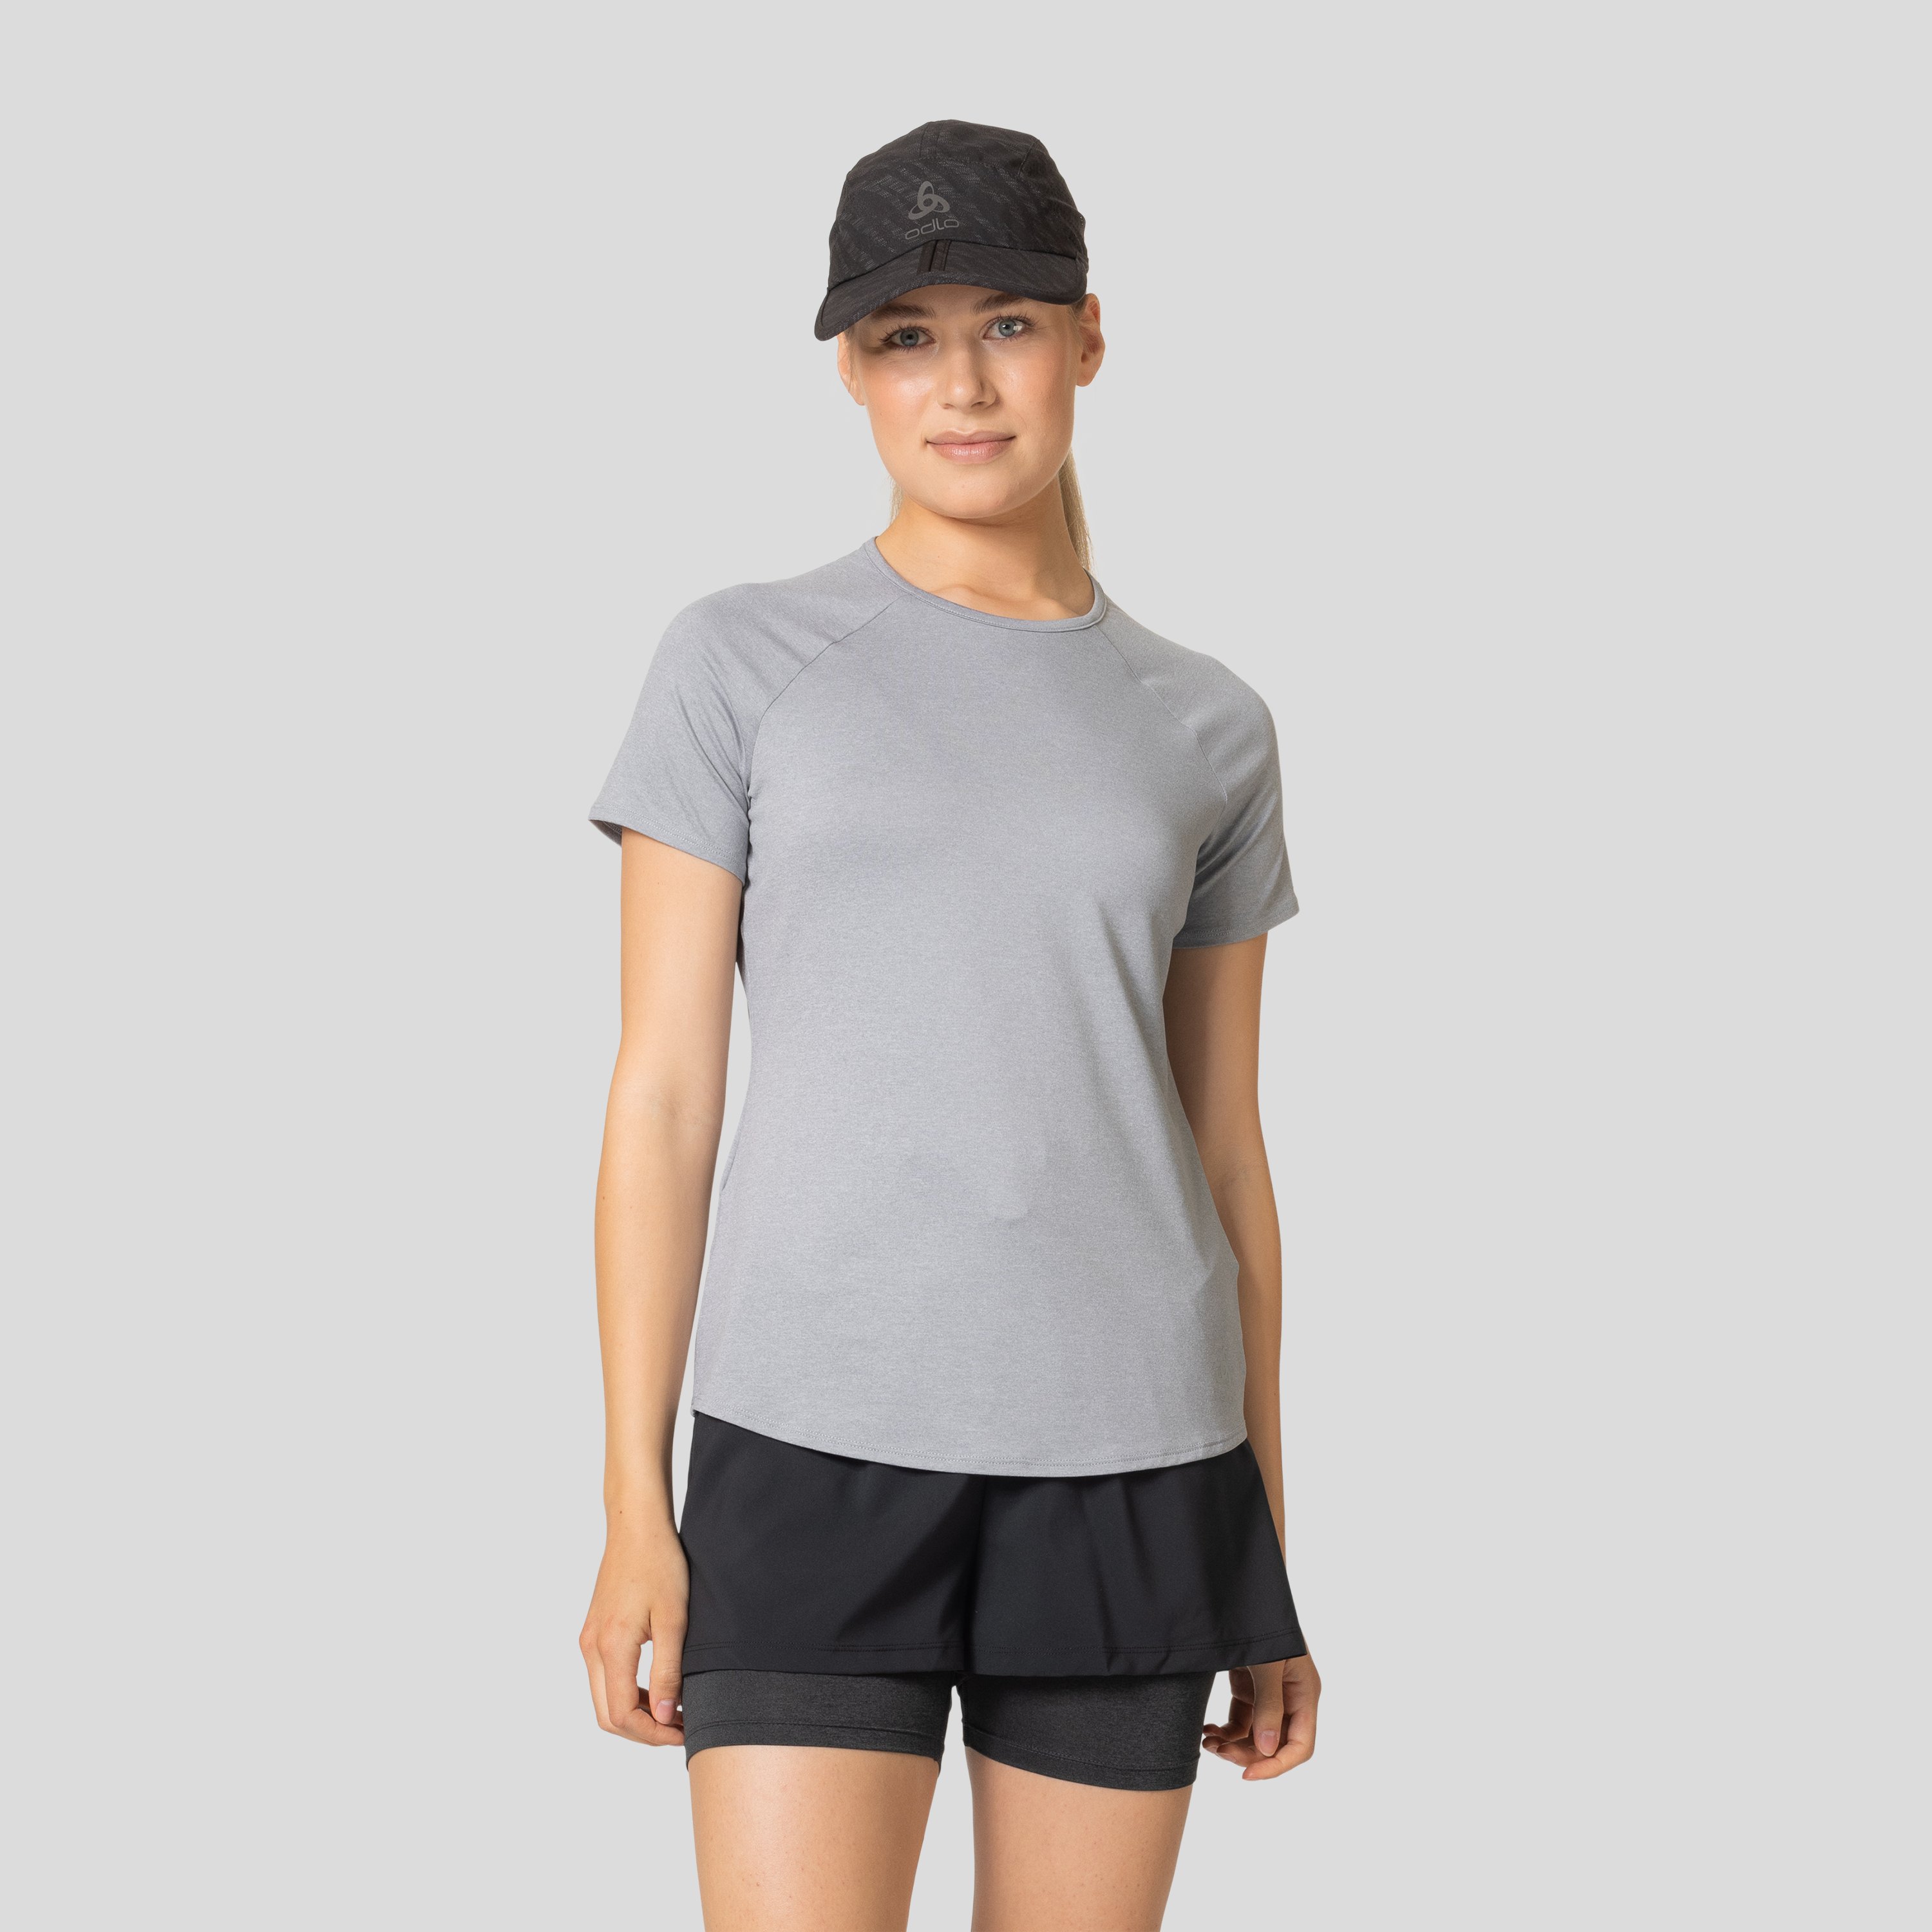 ODLO Active 365 T-Shirt für Damen, S, grau